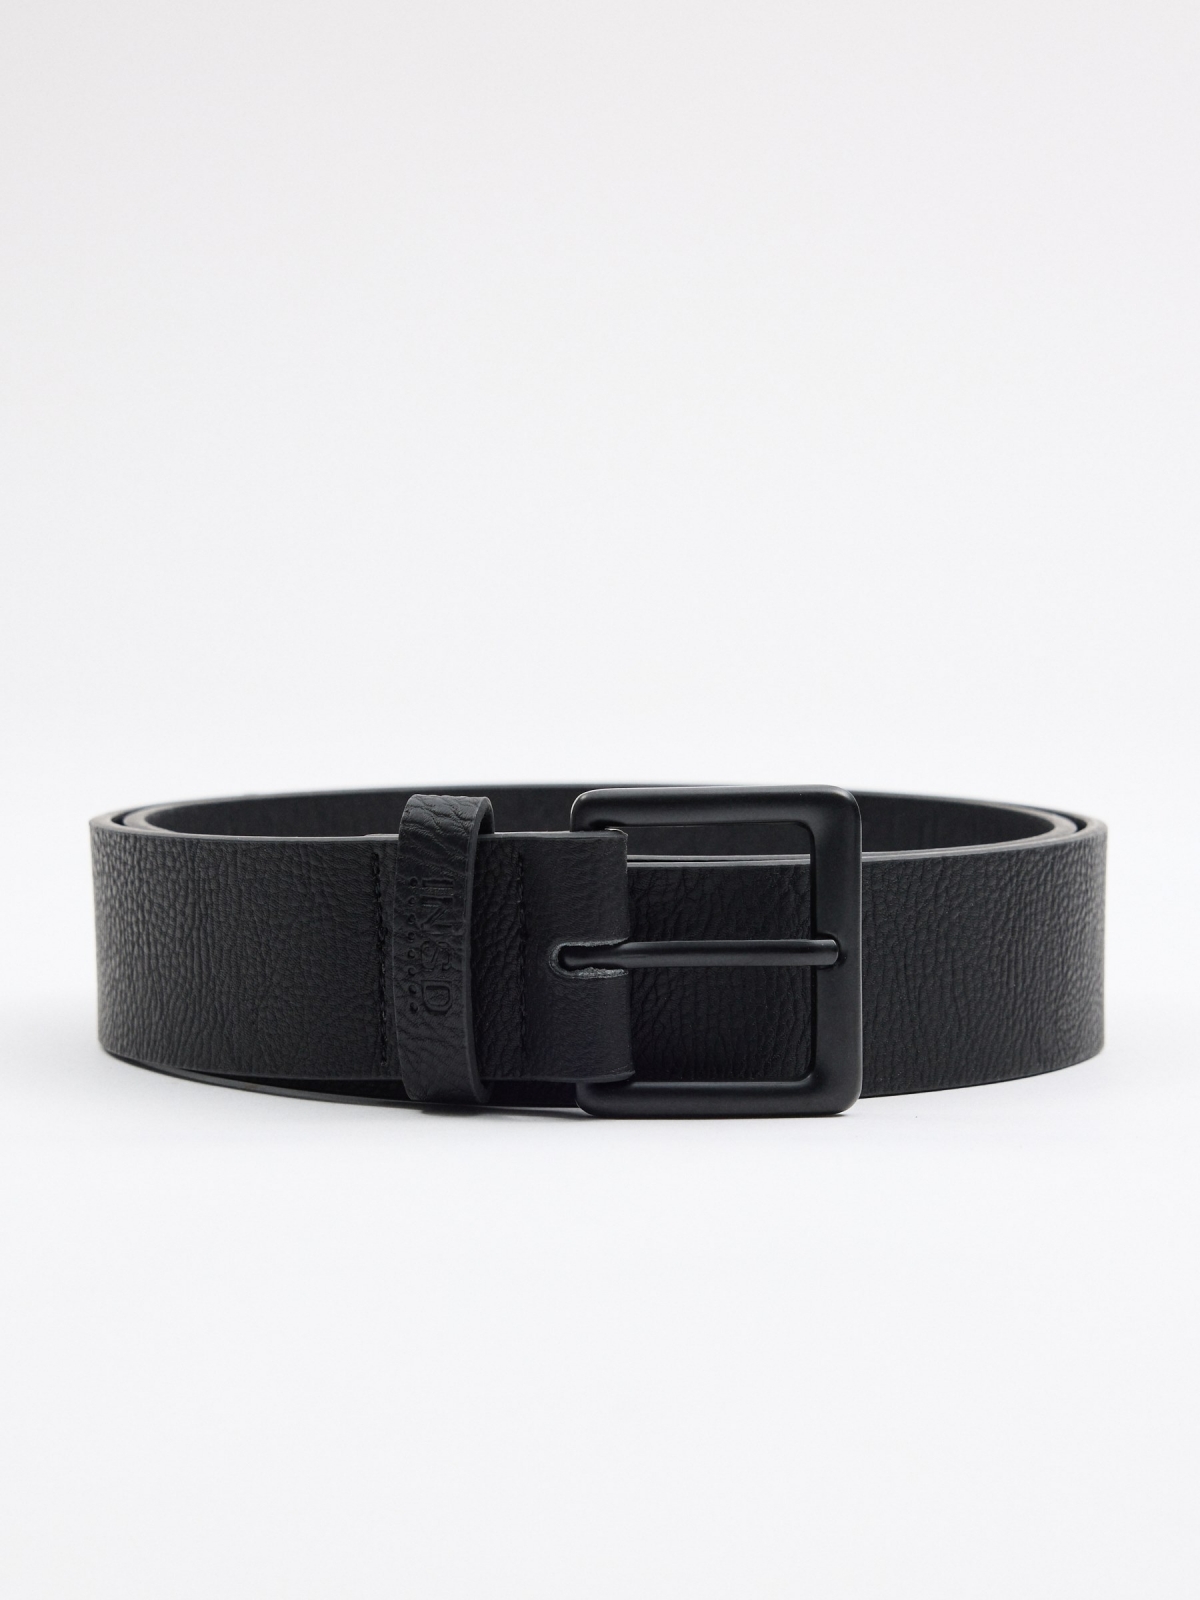 Men's black leatherette belt black rolled view